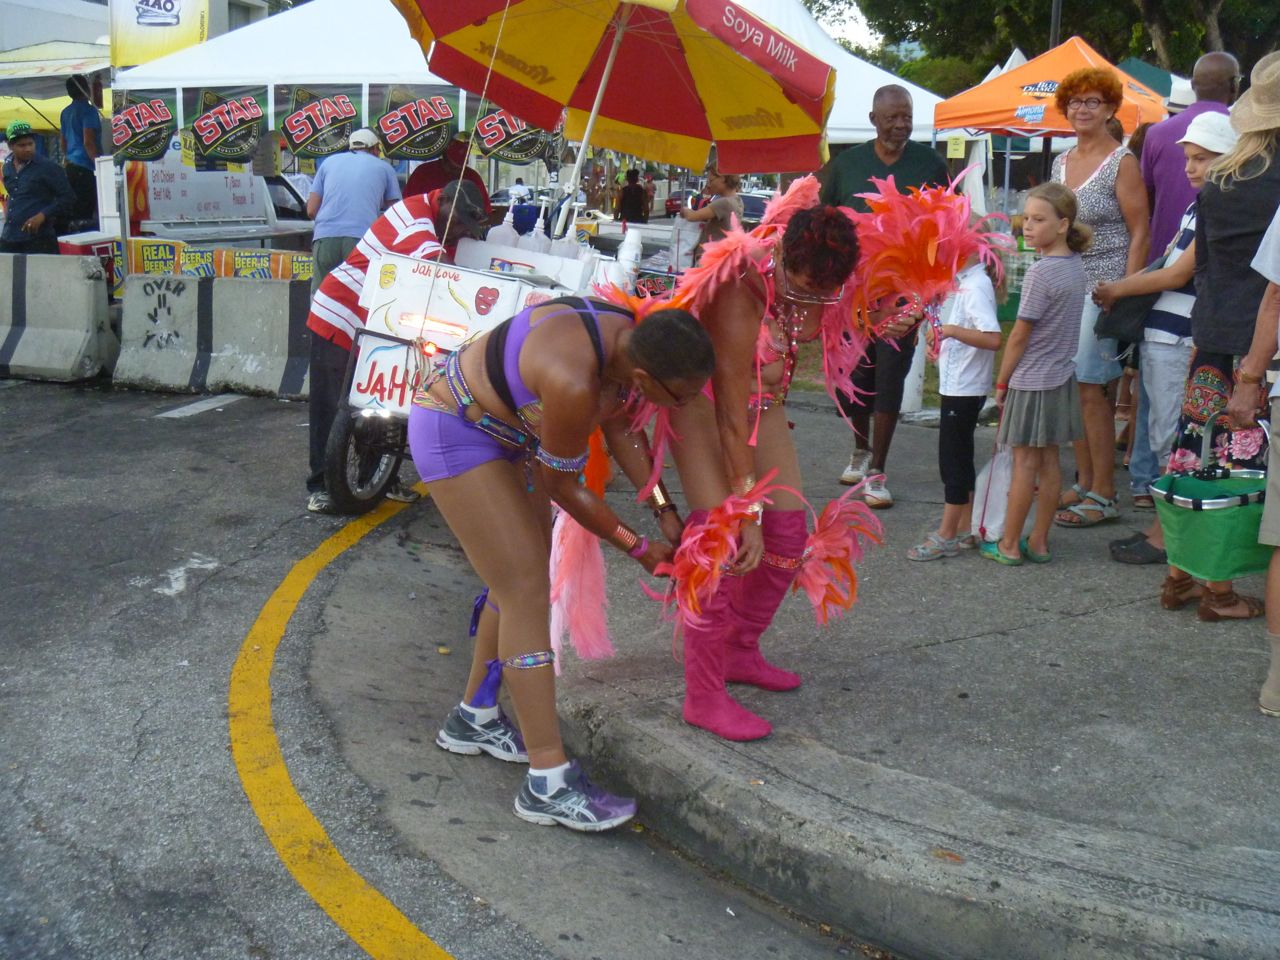 Anziehen des Kostüms vor dem offiziellen Beginn des Karnevals der Grande Parade in Trinidad